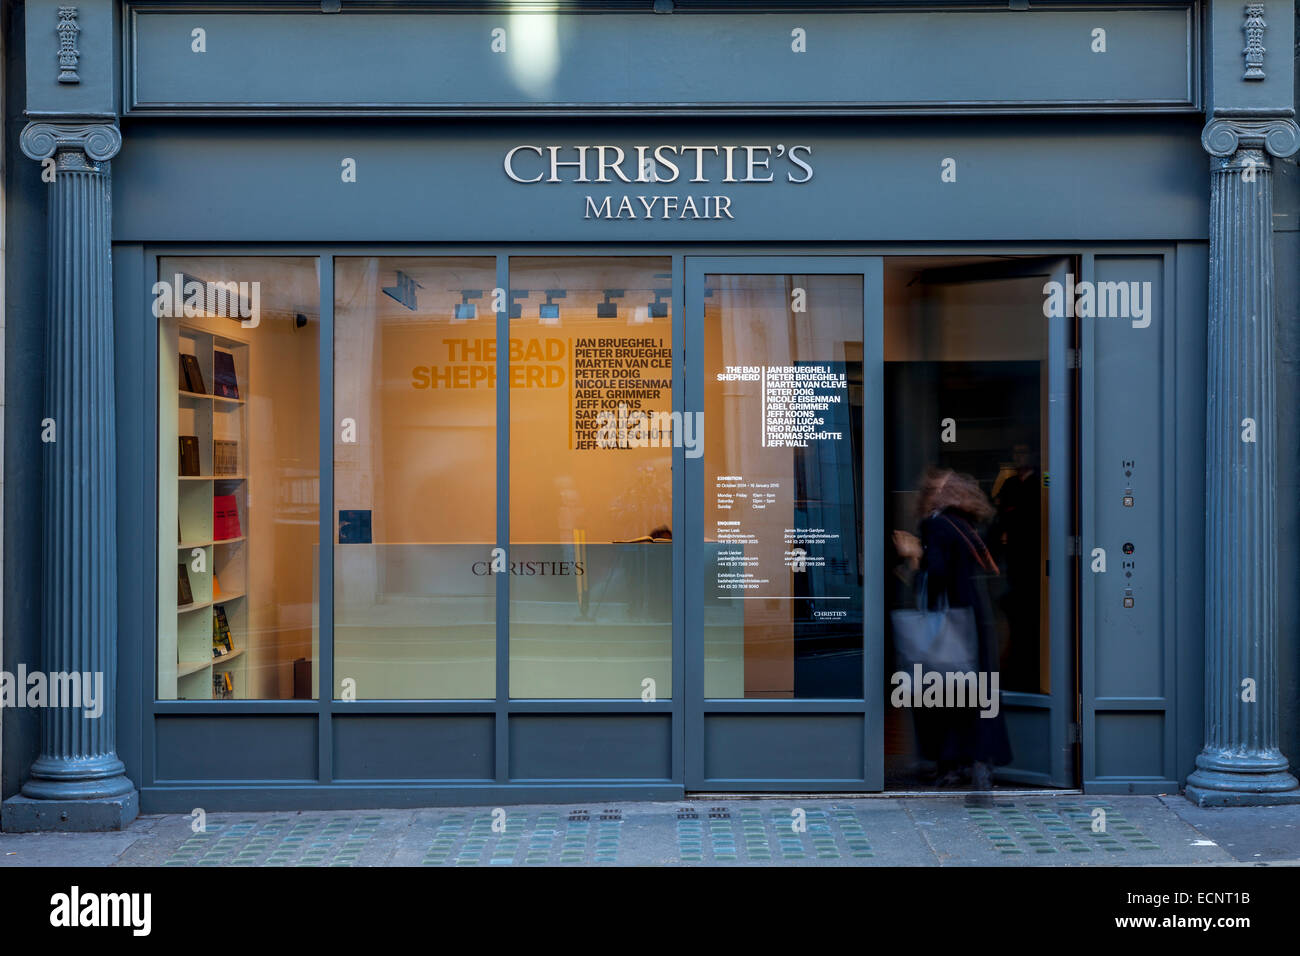 Maison de Ventes aux Enchères Christie's à New Bond Street, Londres, Angleterre Banque D'Images